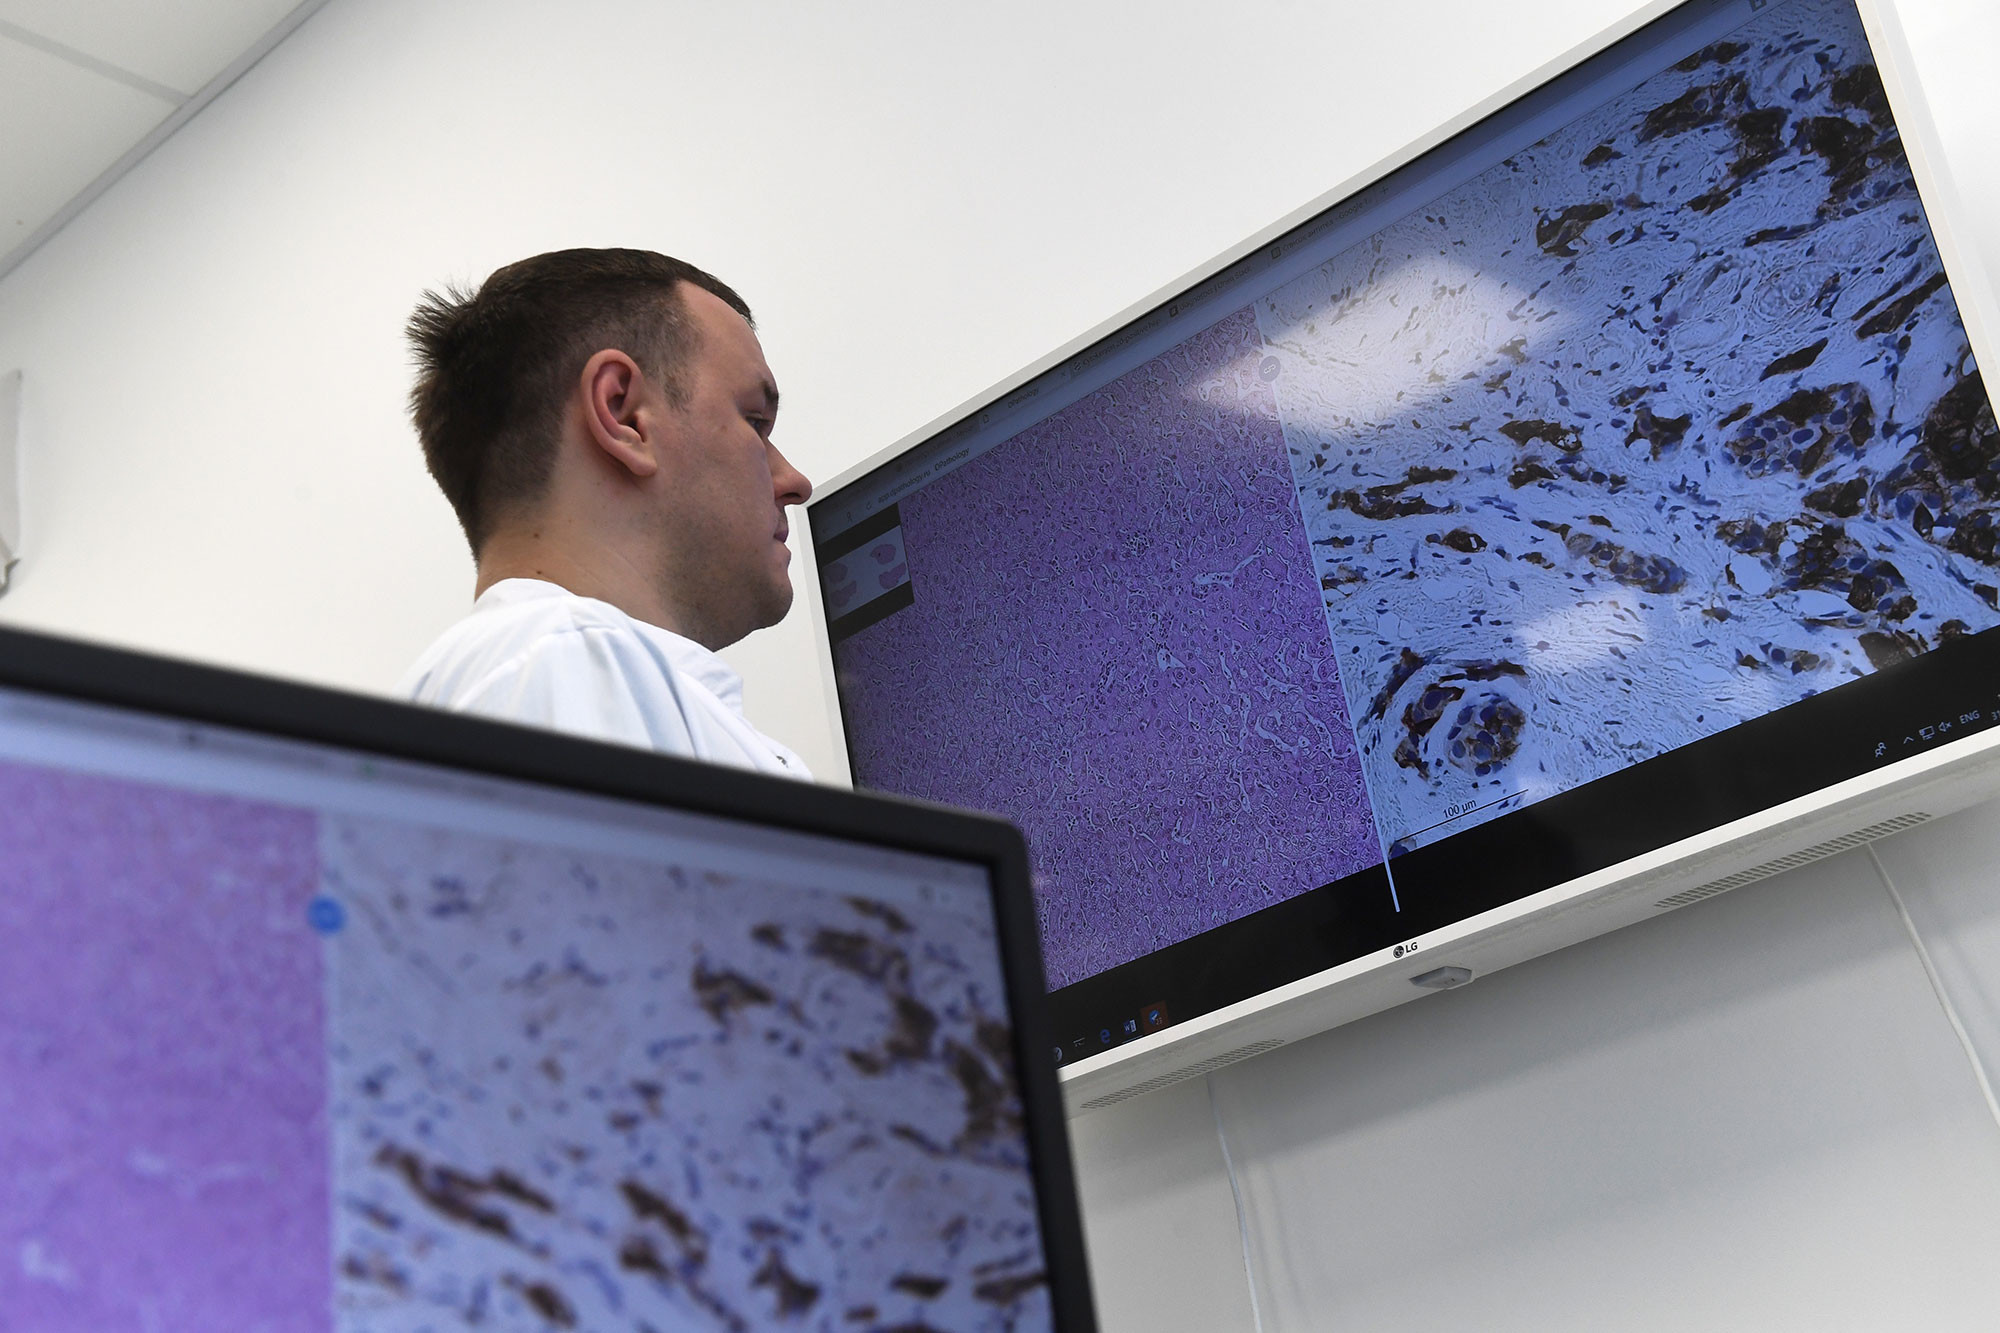 Сотрудник цифровой лаборатории для диагностики рака, которая открылась в технопарке "Сколково", во время работы. Фото: © РИА Новости / Кирилл Каллиников